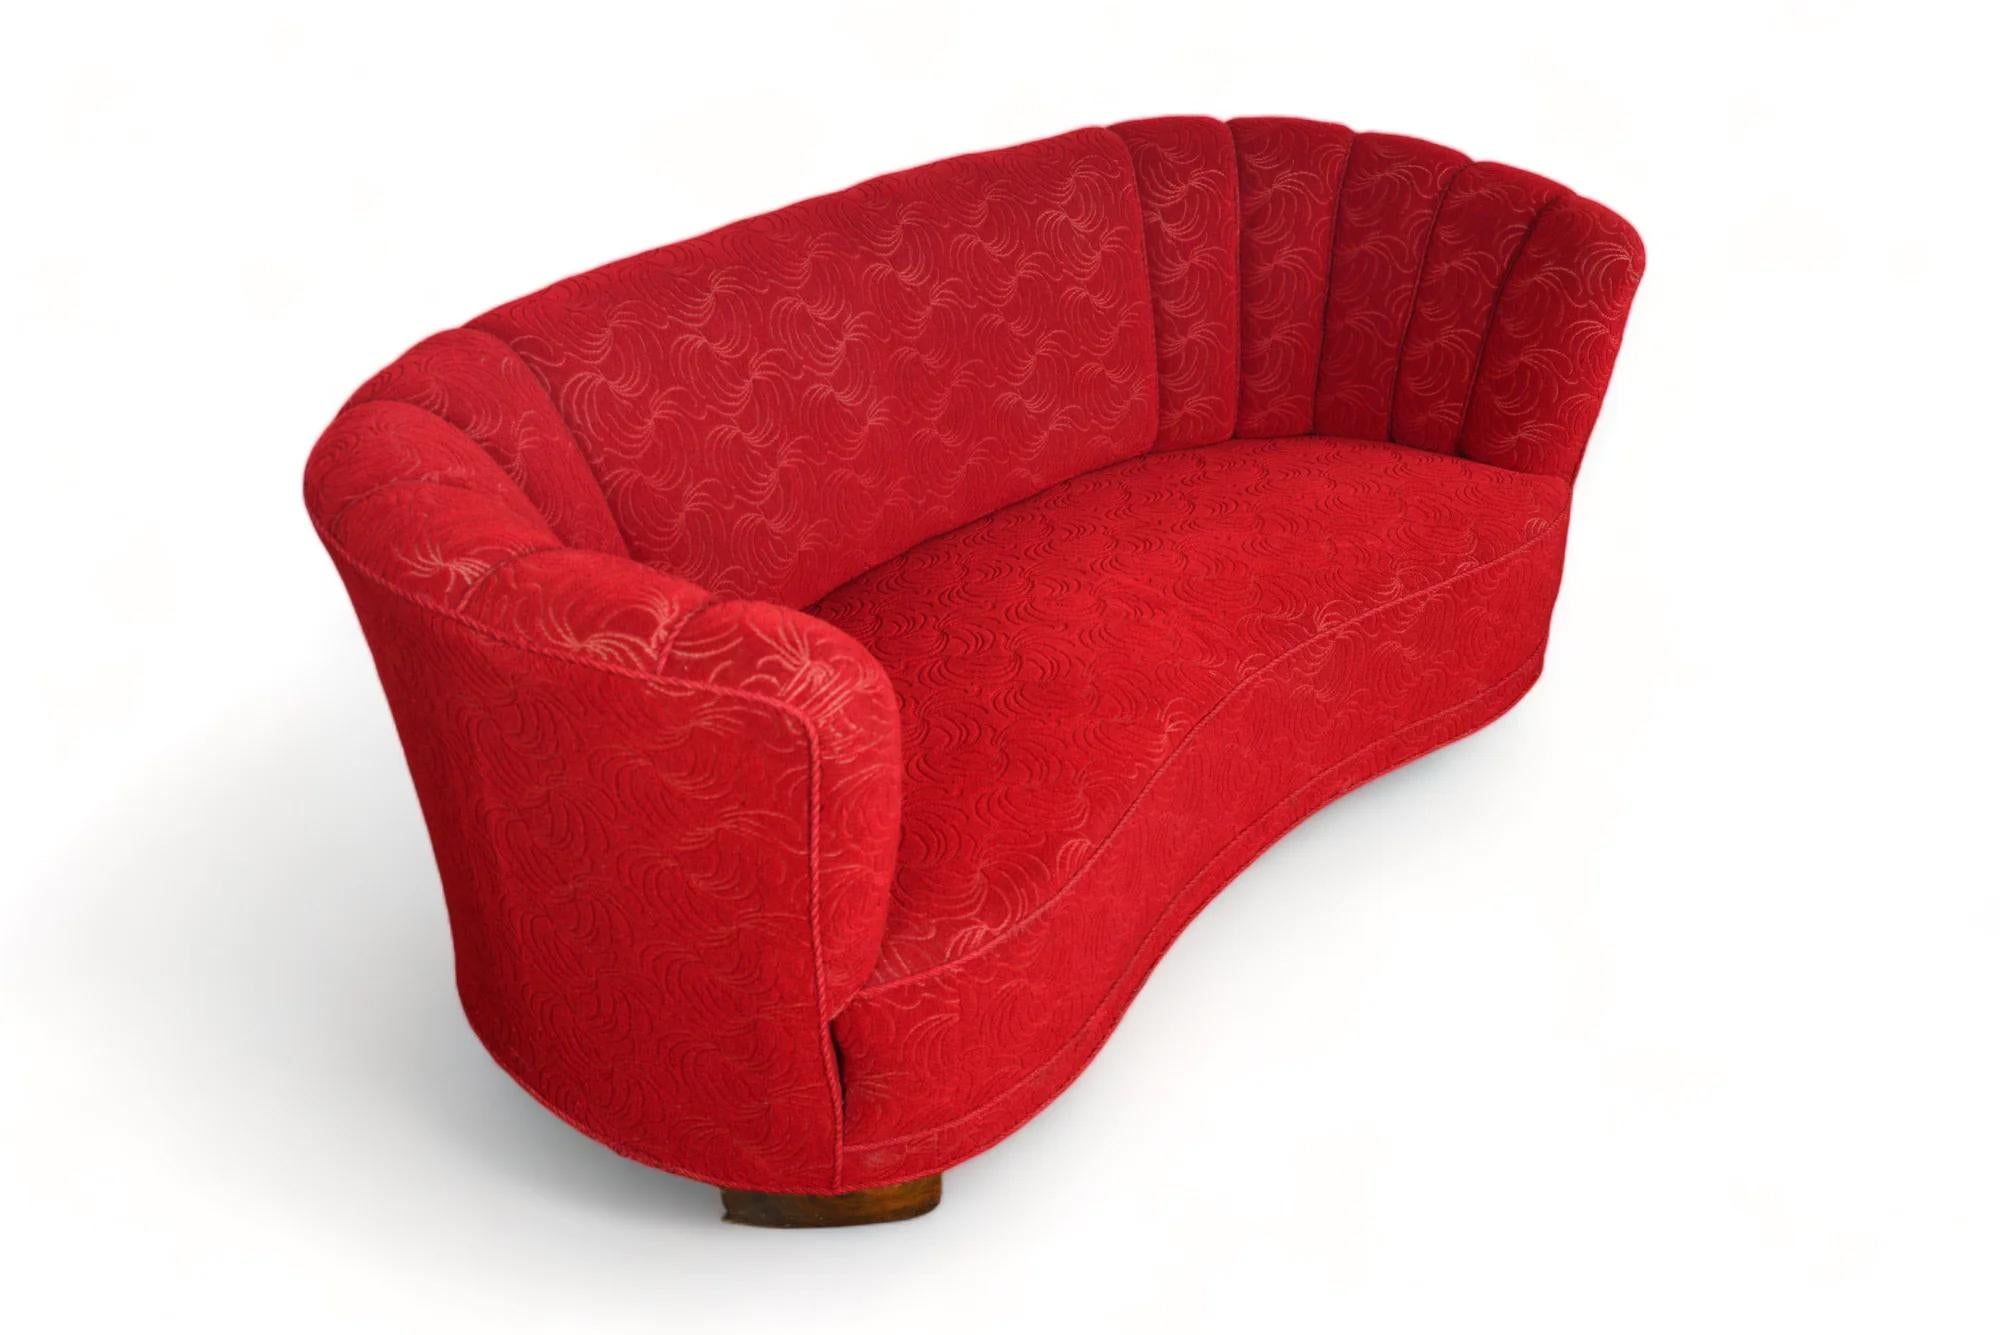 Danish 1940s Banana Sofa In Crimson Brocade Fabric For Sale